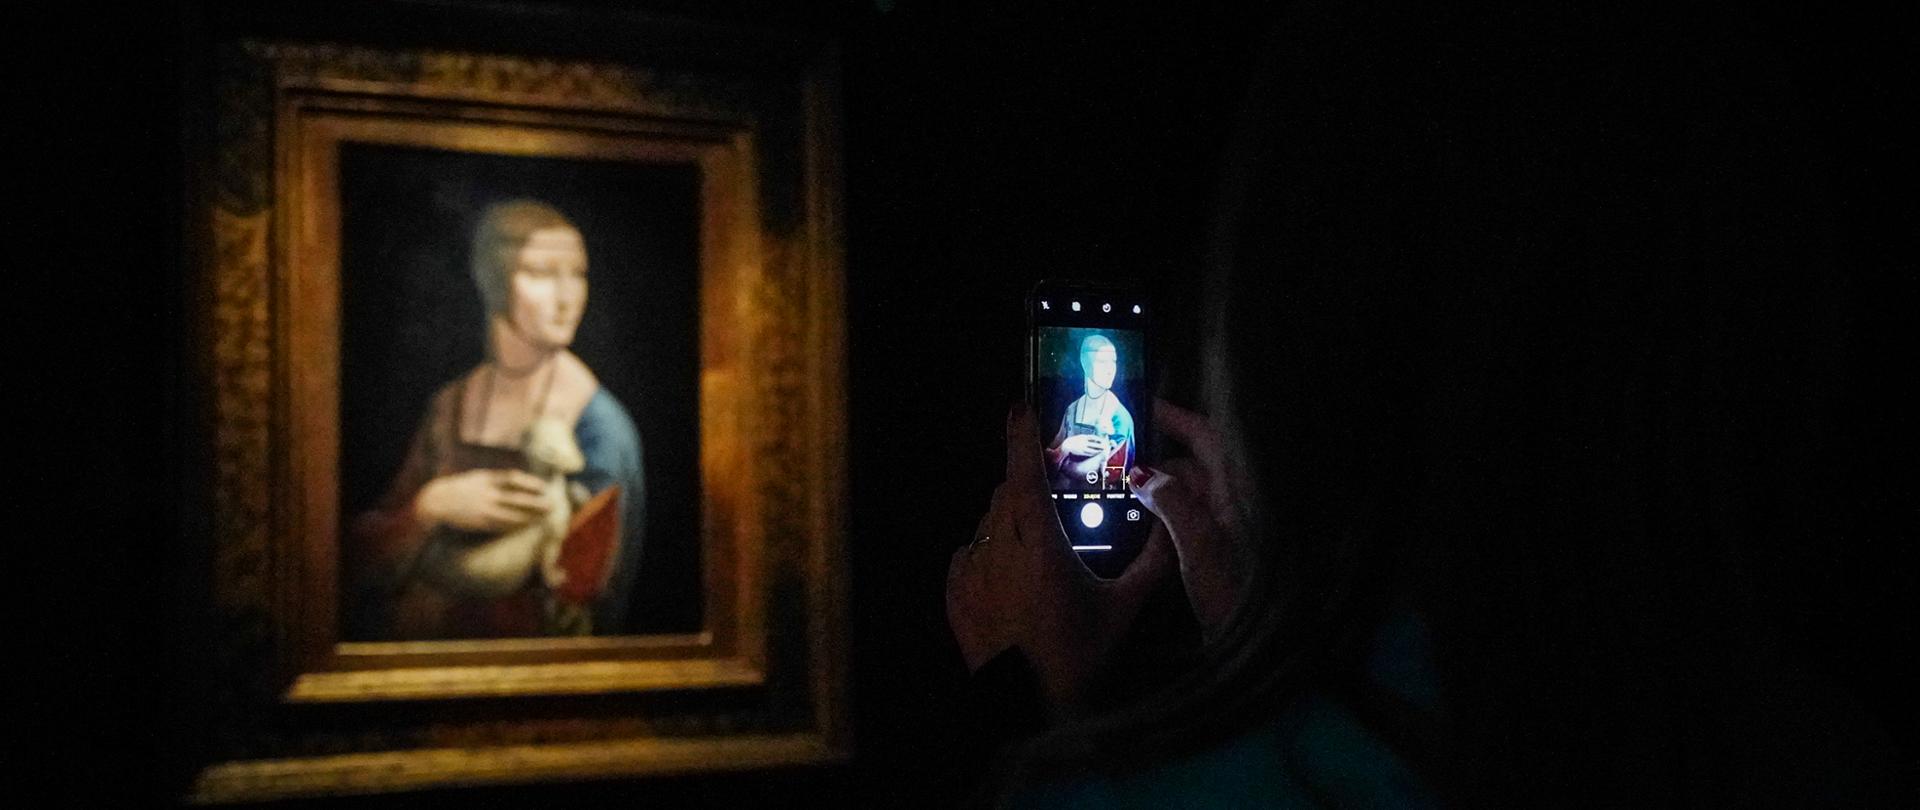 w zacienionej sali ekspozycyjnej ręce trzymają telefon komórkowy, którym robione jest zdjęcie widocznego obrazu "Damy z gronostajem" Leonarda Vinci; na obrazie kobieta pozuje z leżącym na ręce zwierzęciem, które przytrzymuje drugą ręką